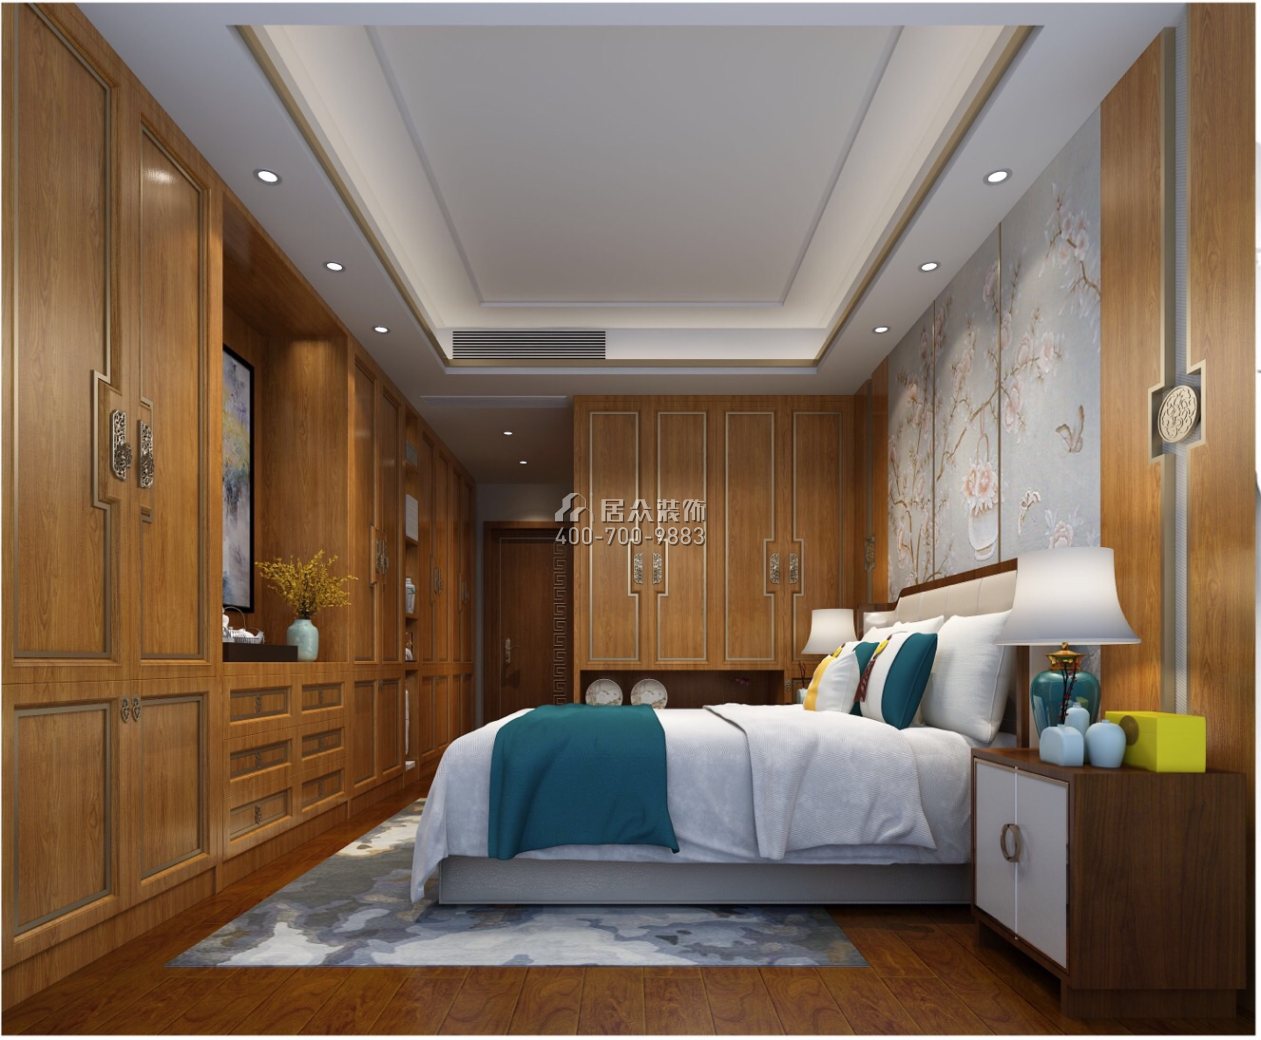 樂城120平方米中式風格平層戶型臥室裝修效果圖